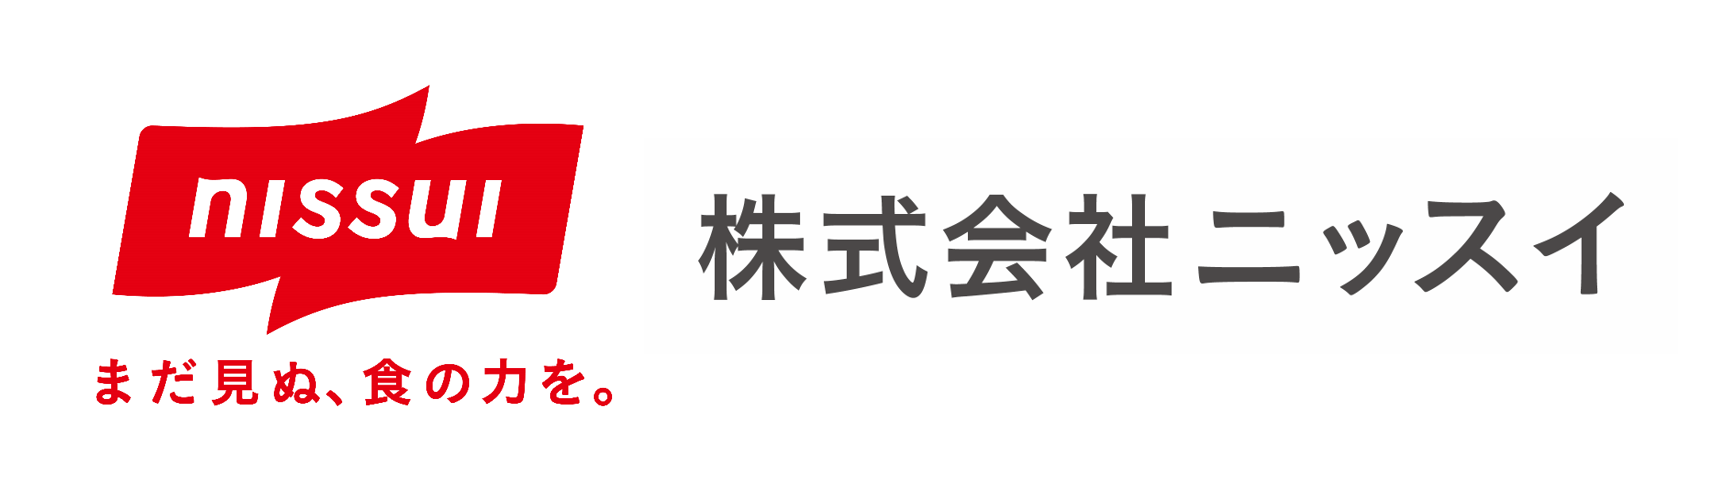 日本水産株式会社 ホームページ